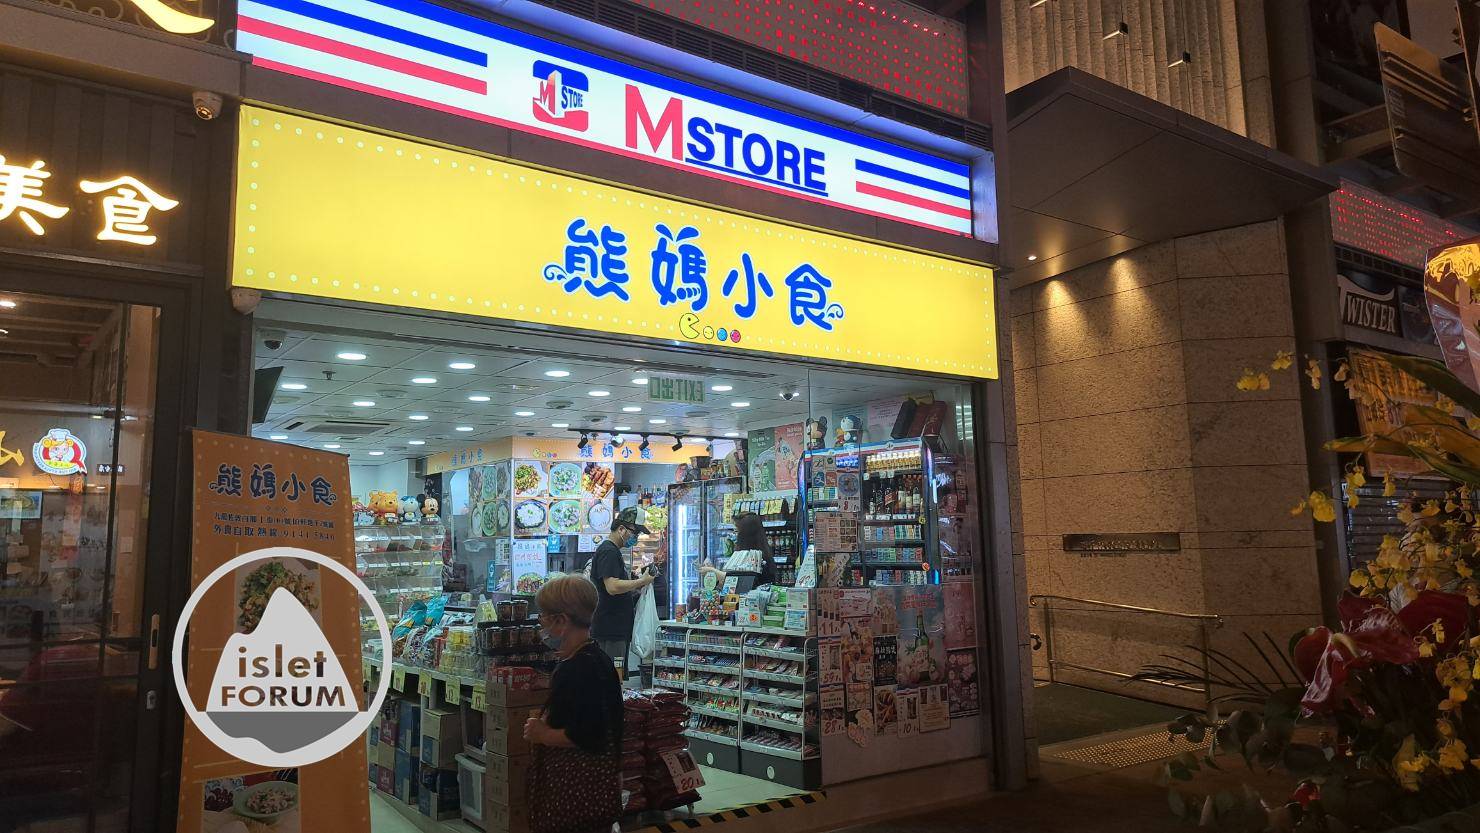 熊媽小食 MStore (1).jpg